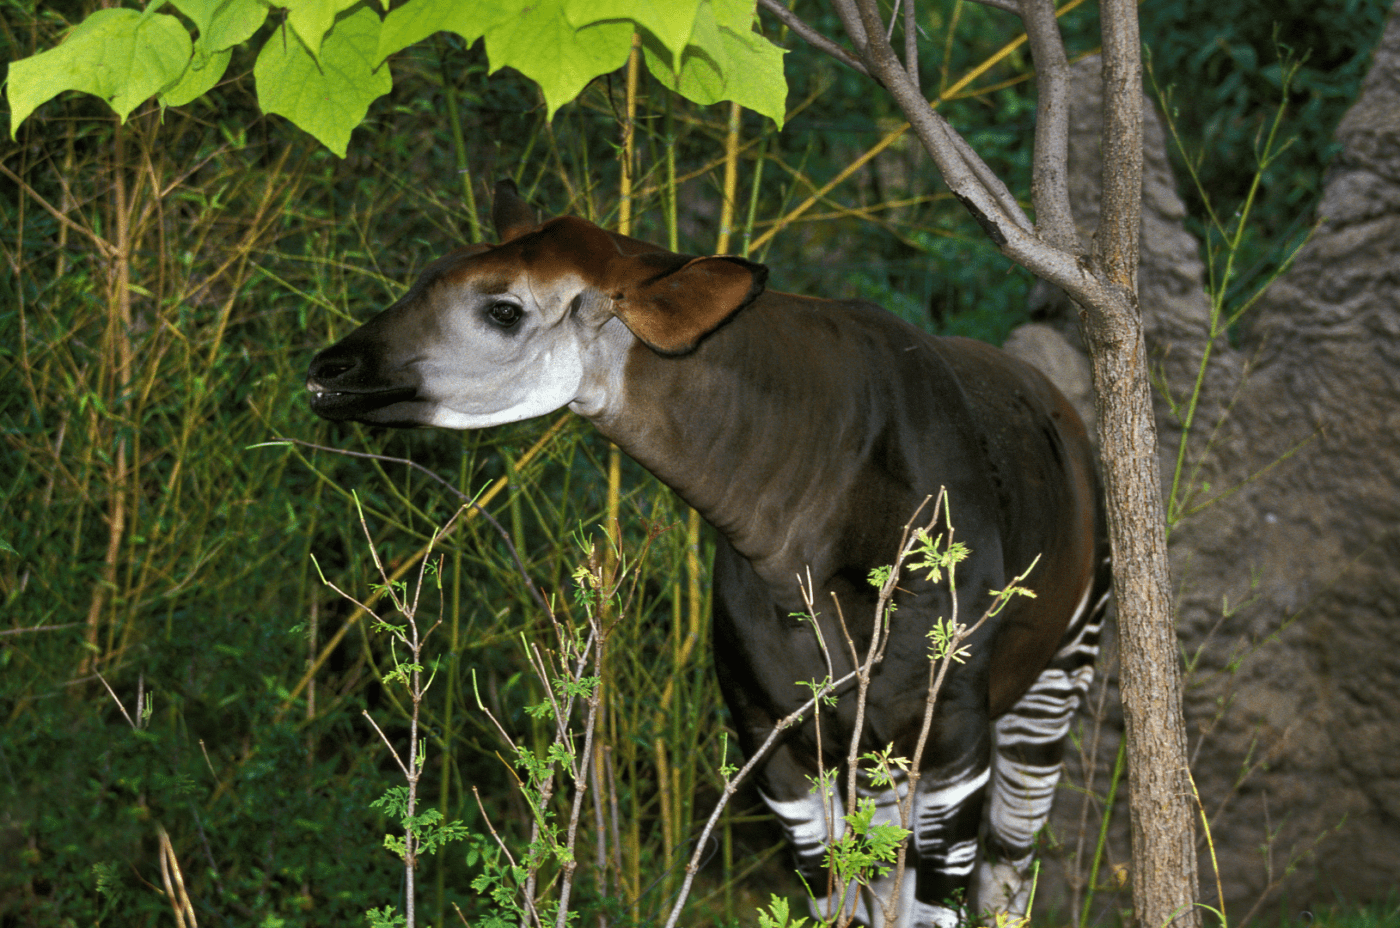 A close up of an endangered Okapi